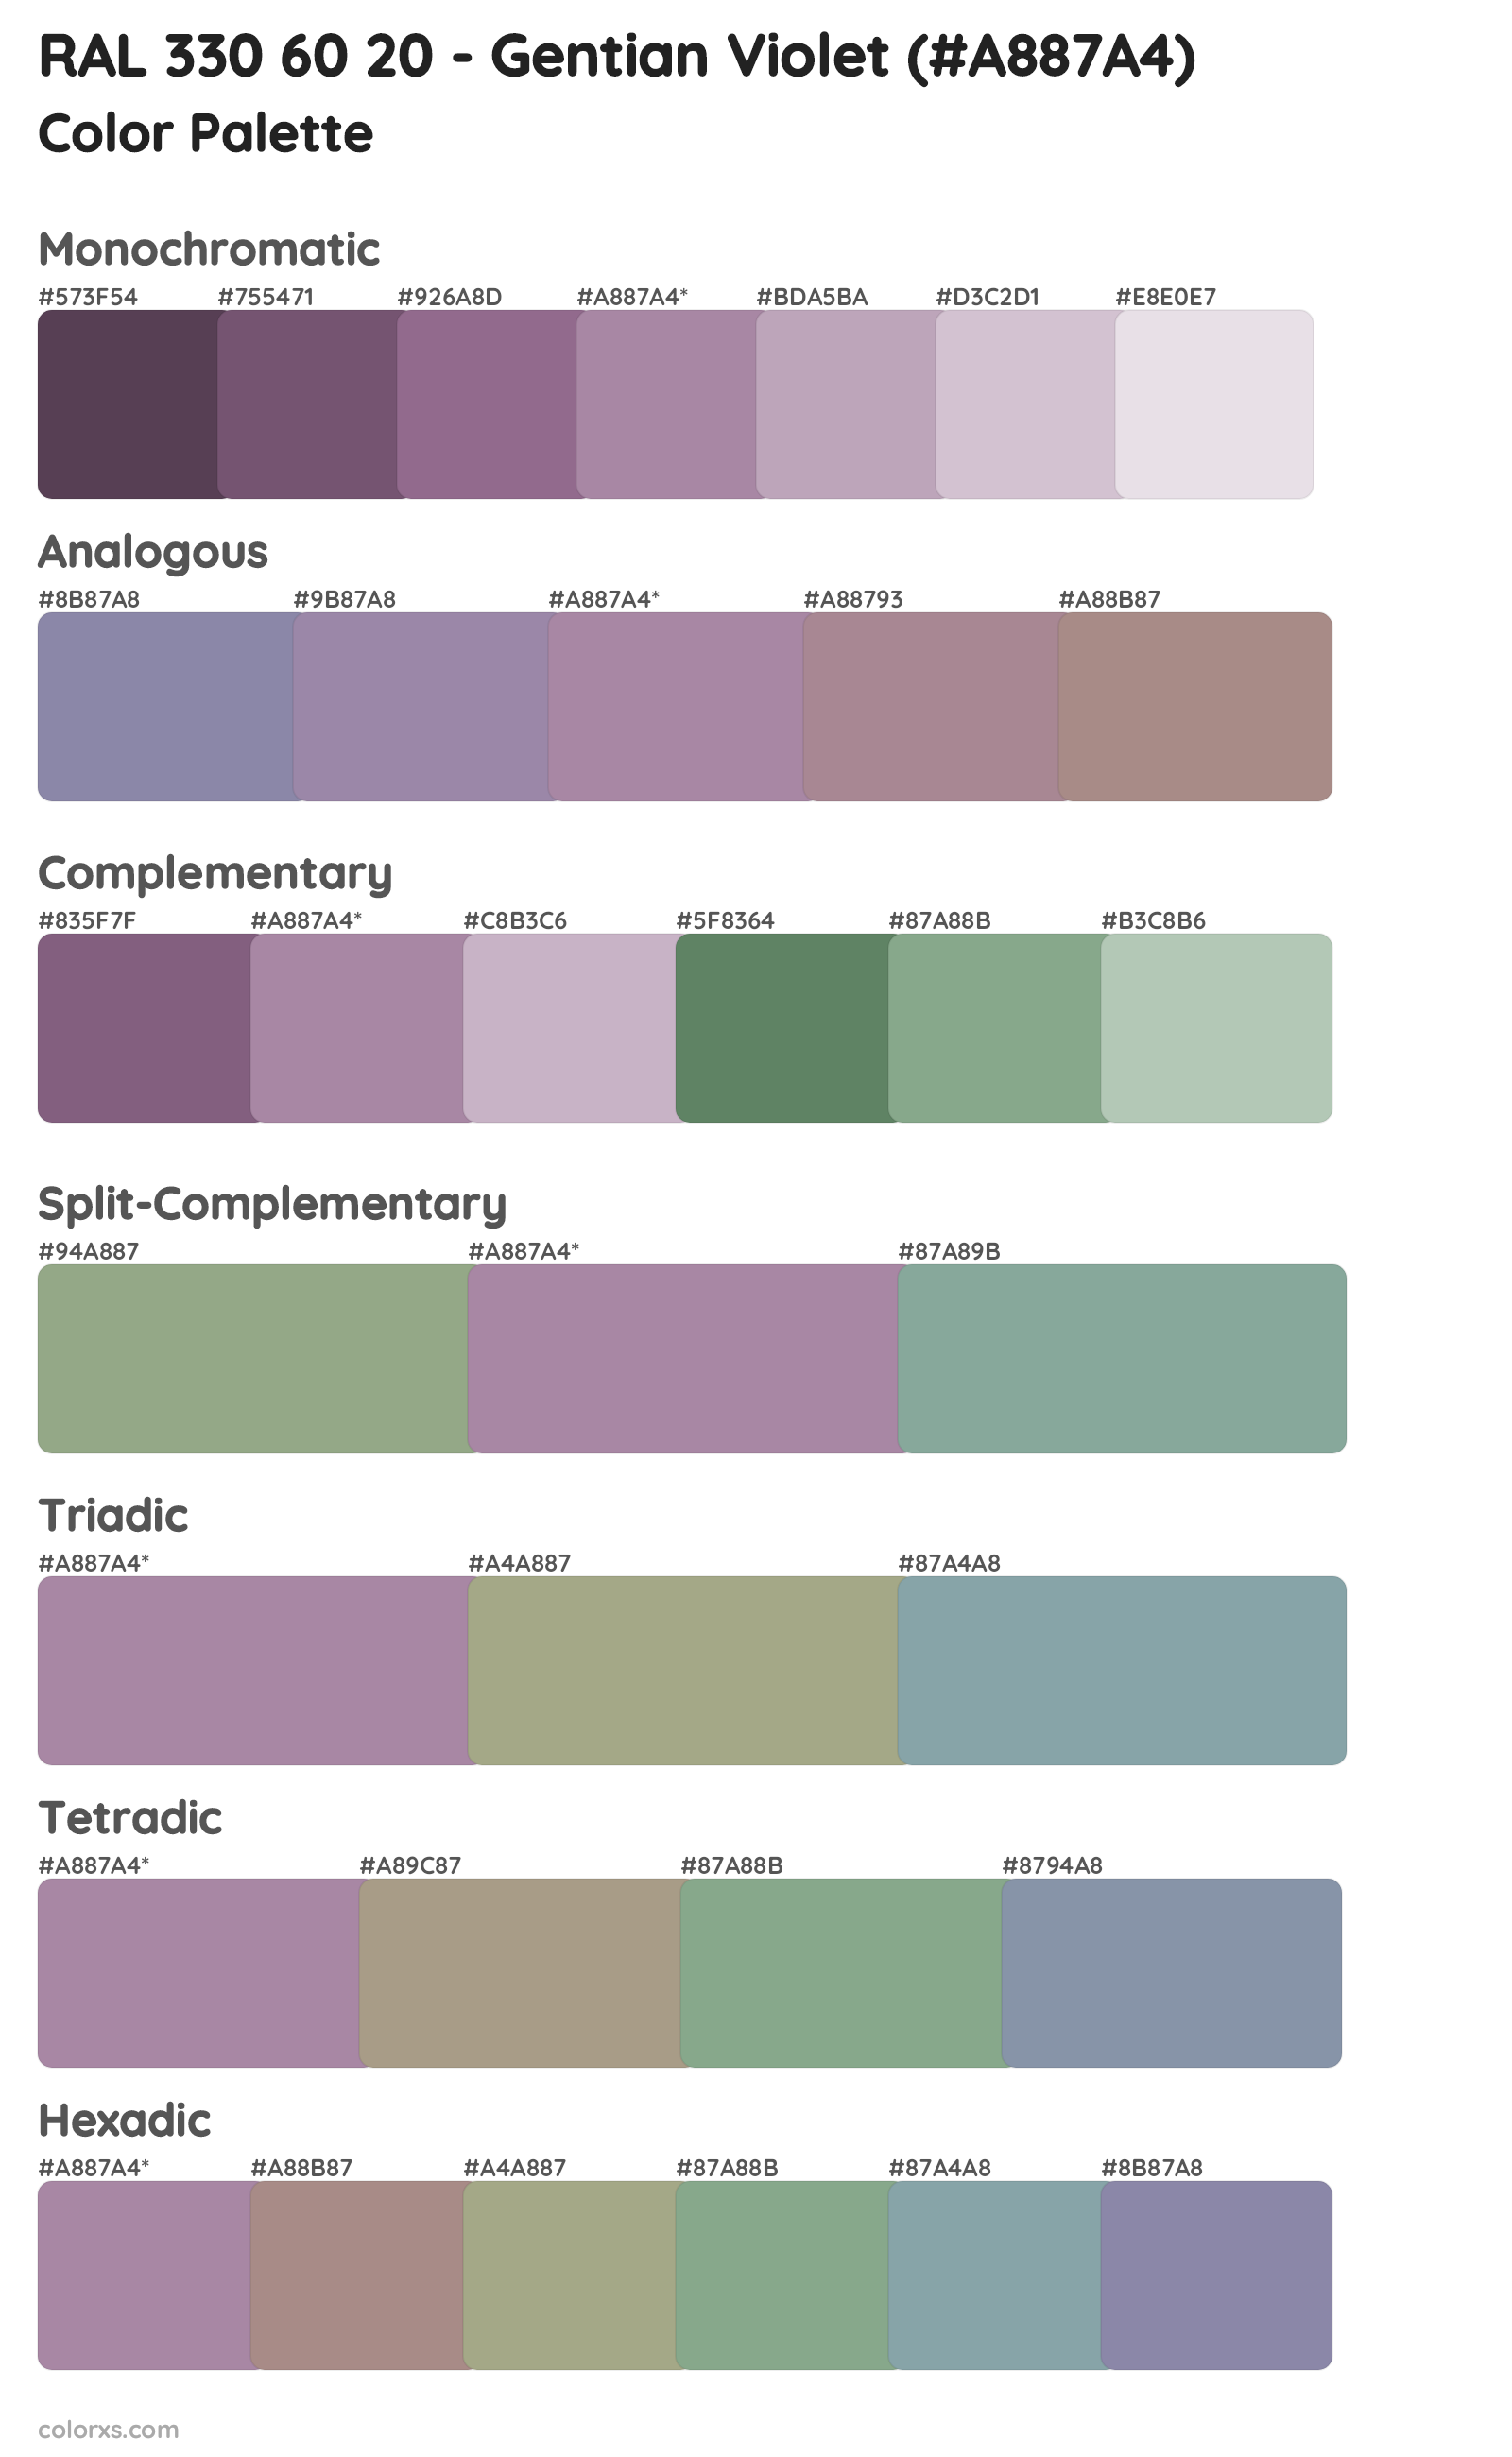 RAL 330 60 20 - Gentian Violet Color Scheme Palettes